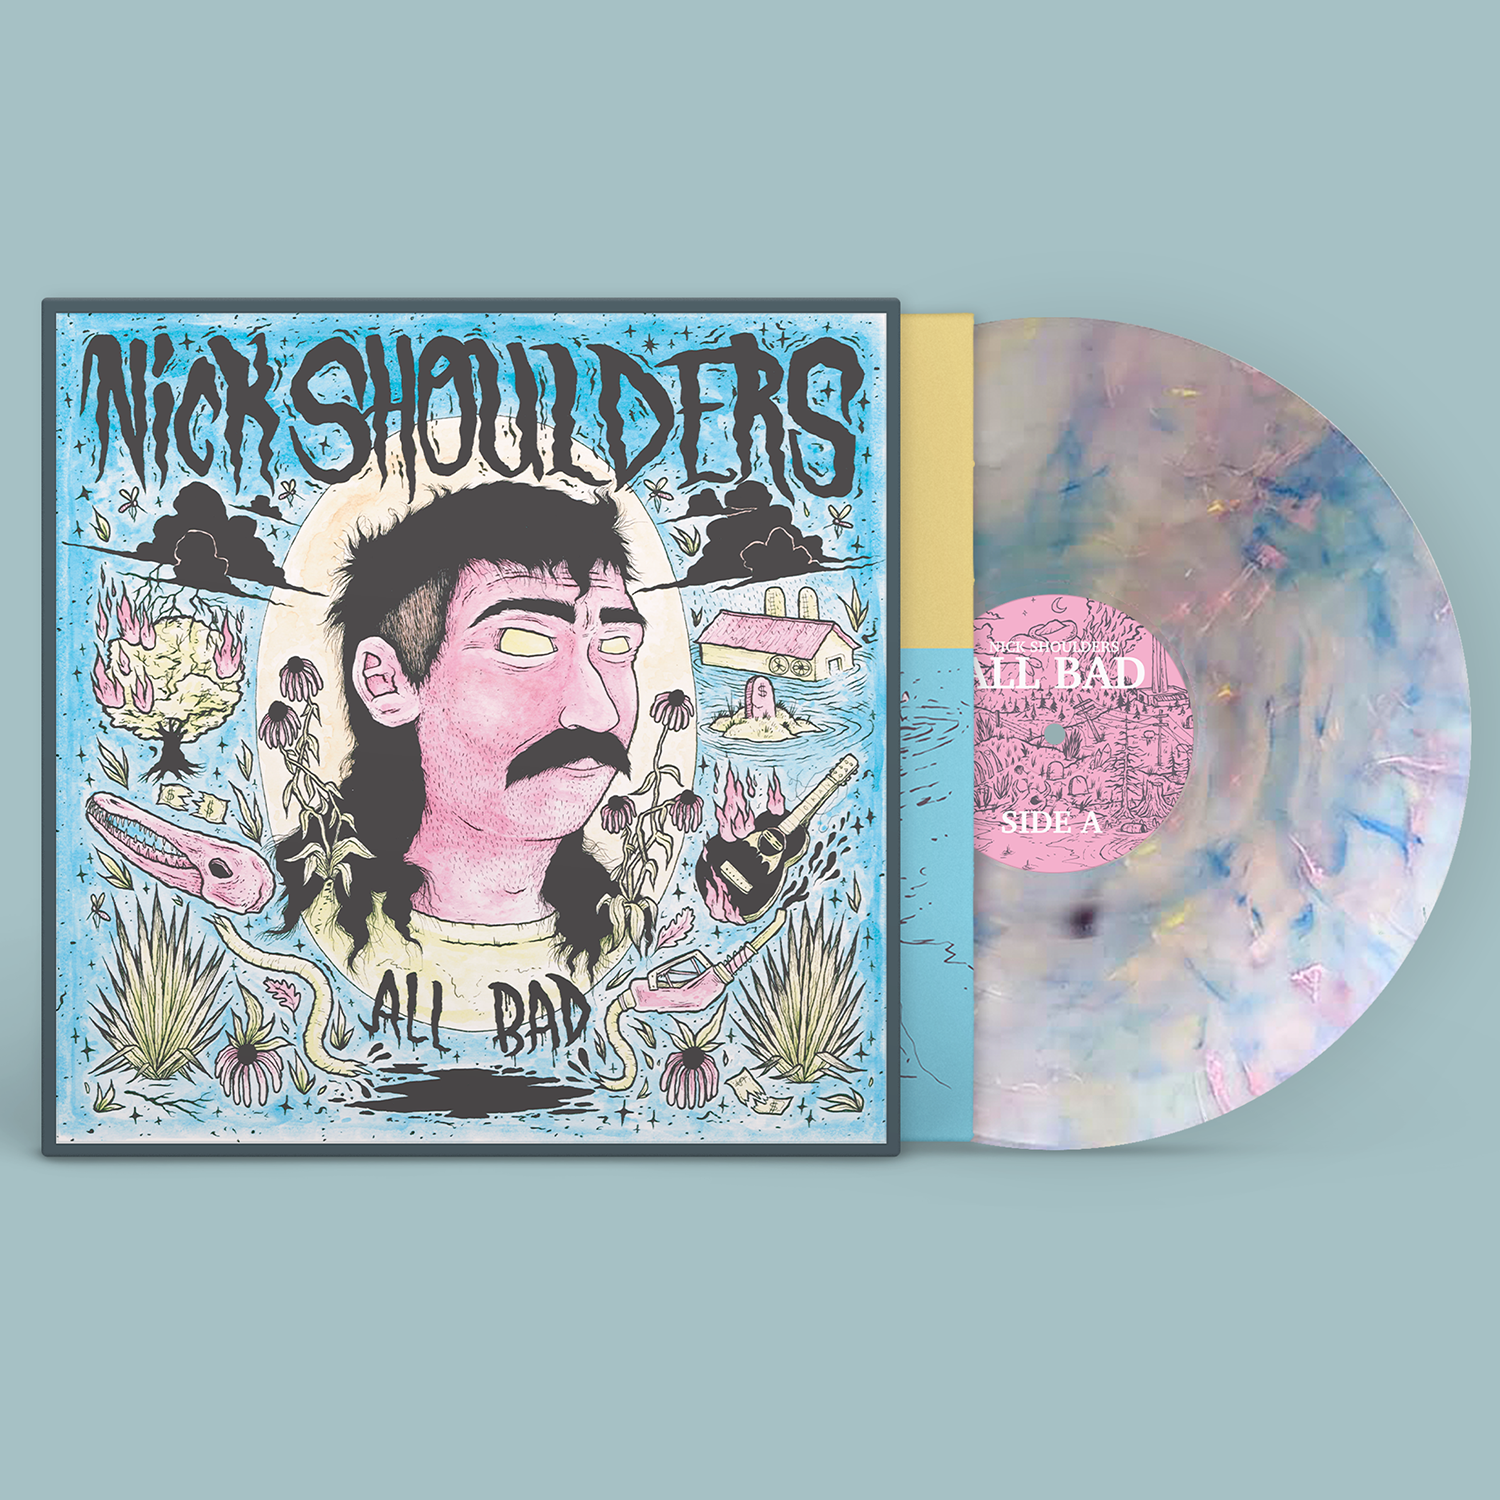 Nick Shoulders - "All Bad" 150g 'Sweet Misery' Vinyl